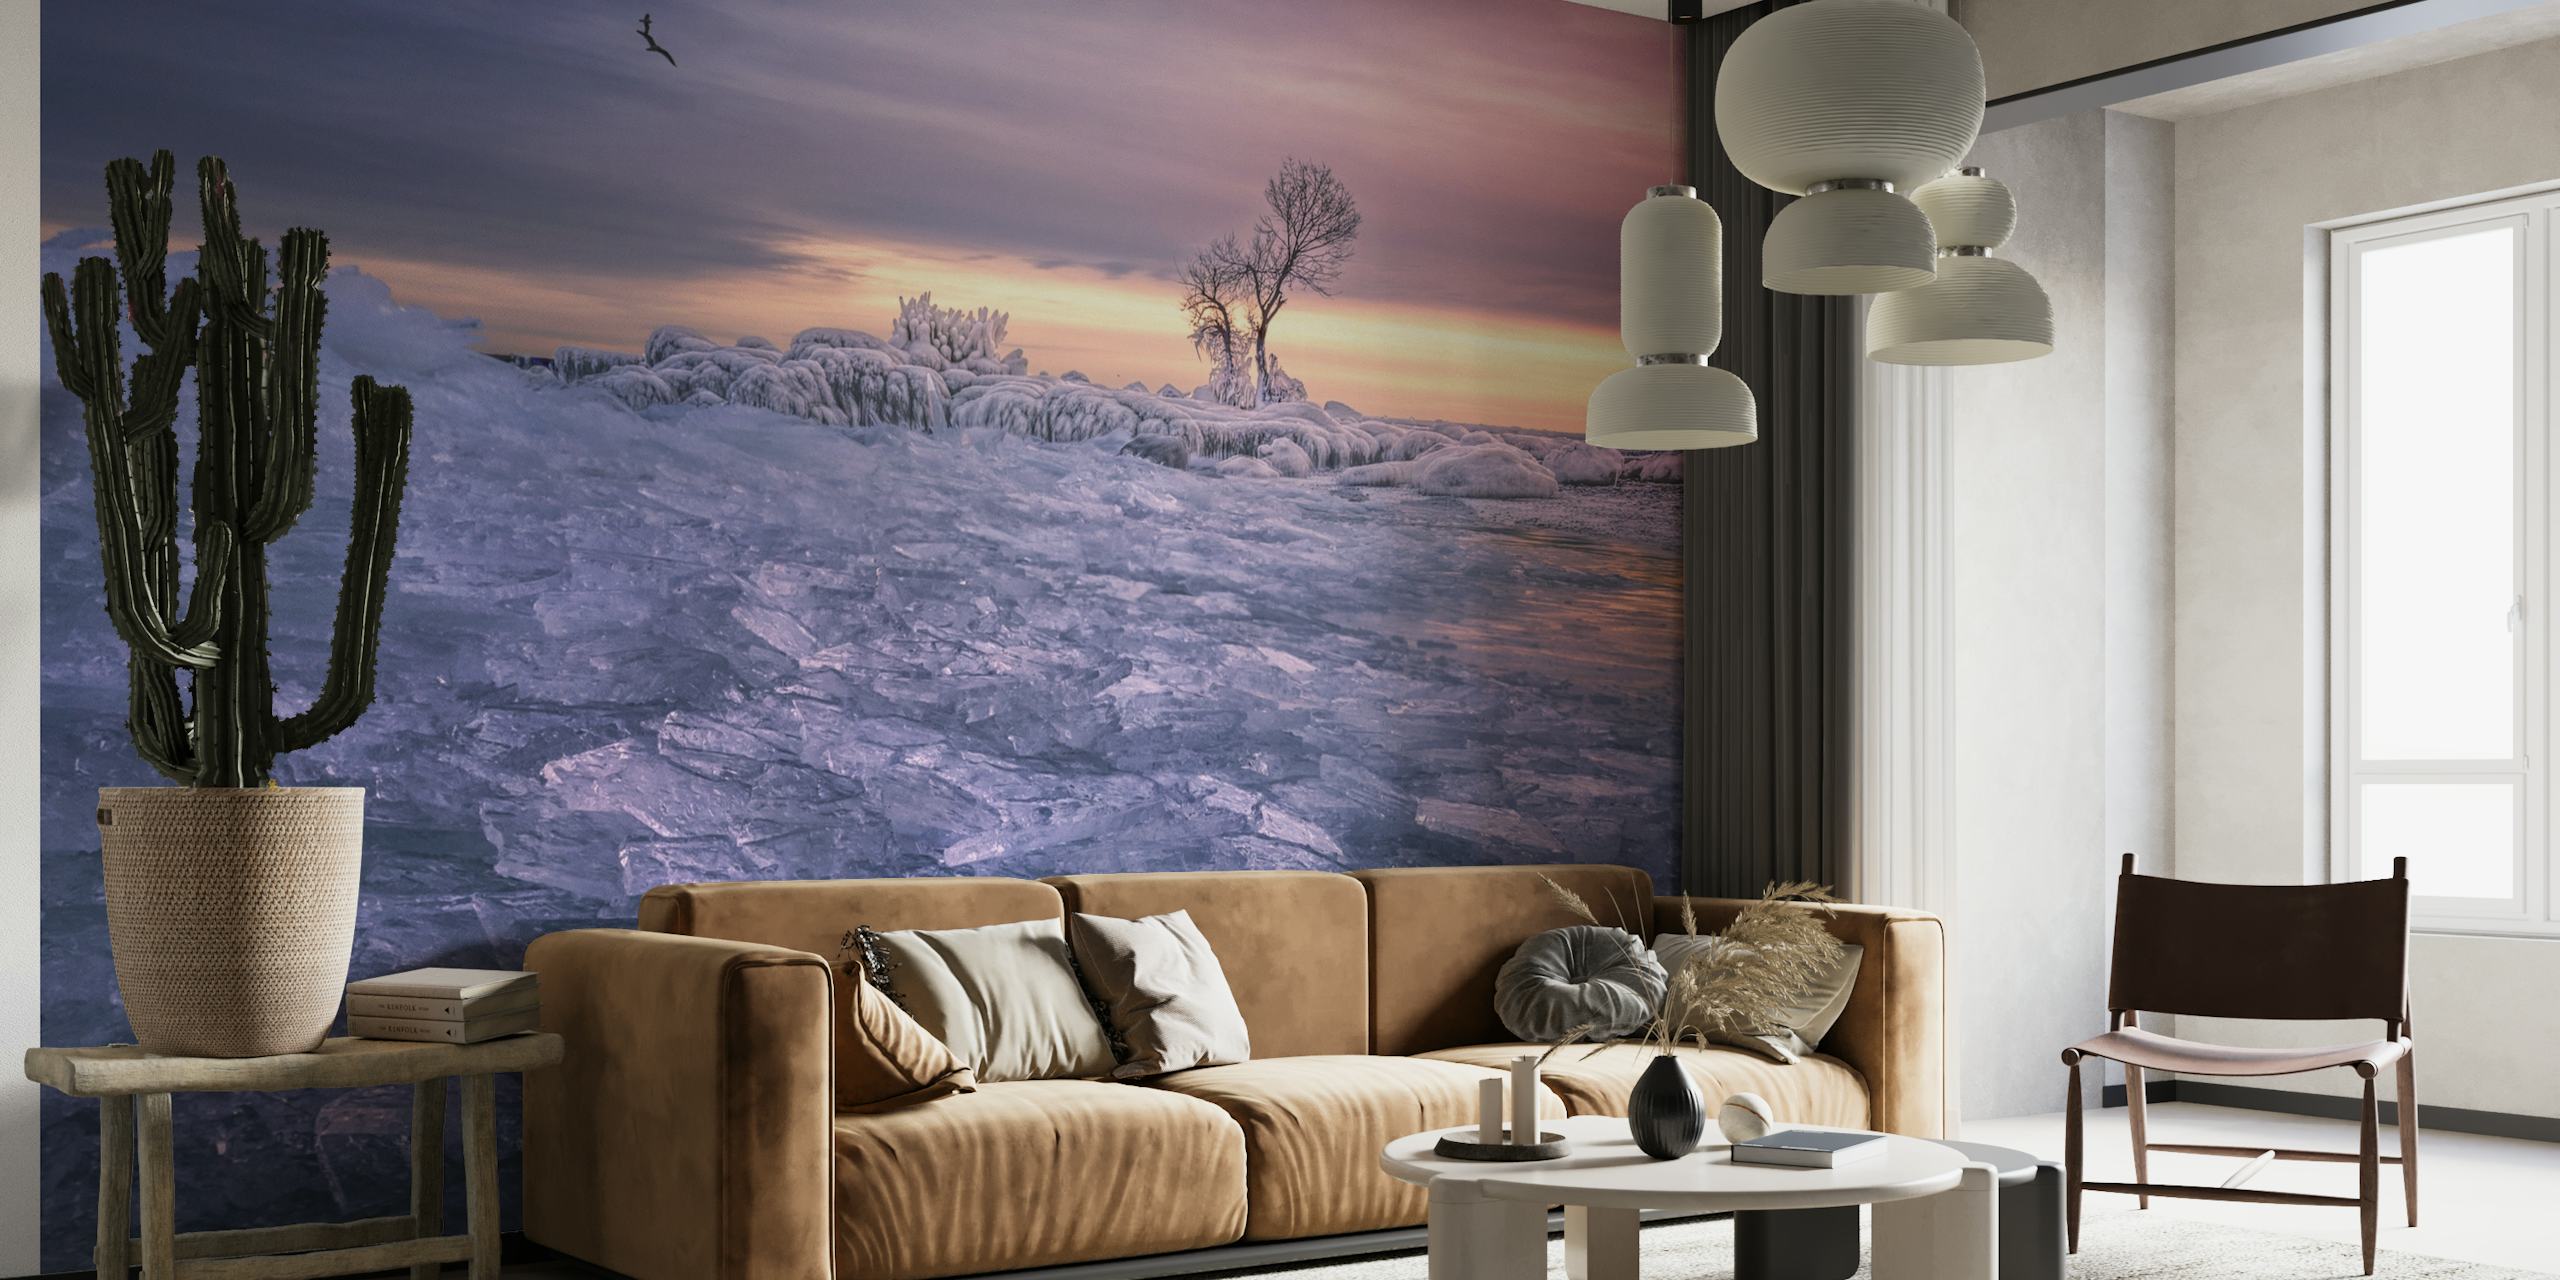 Une fresque murale de scène hivernale sereine avec un arbre solitaire et des teintes crépusculaires sur un paysage givré.